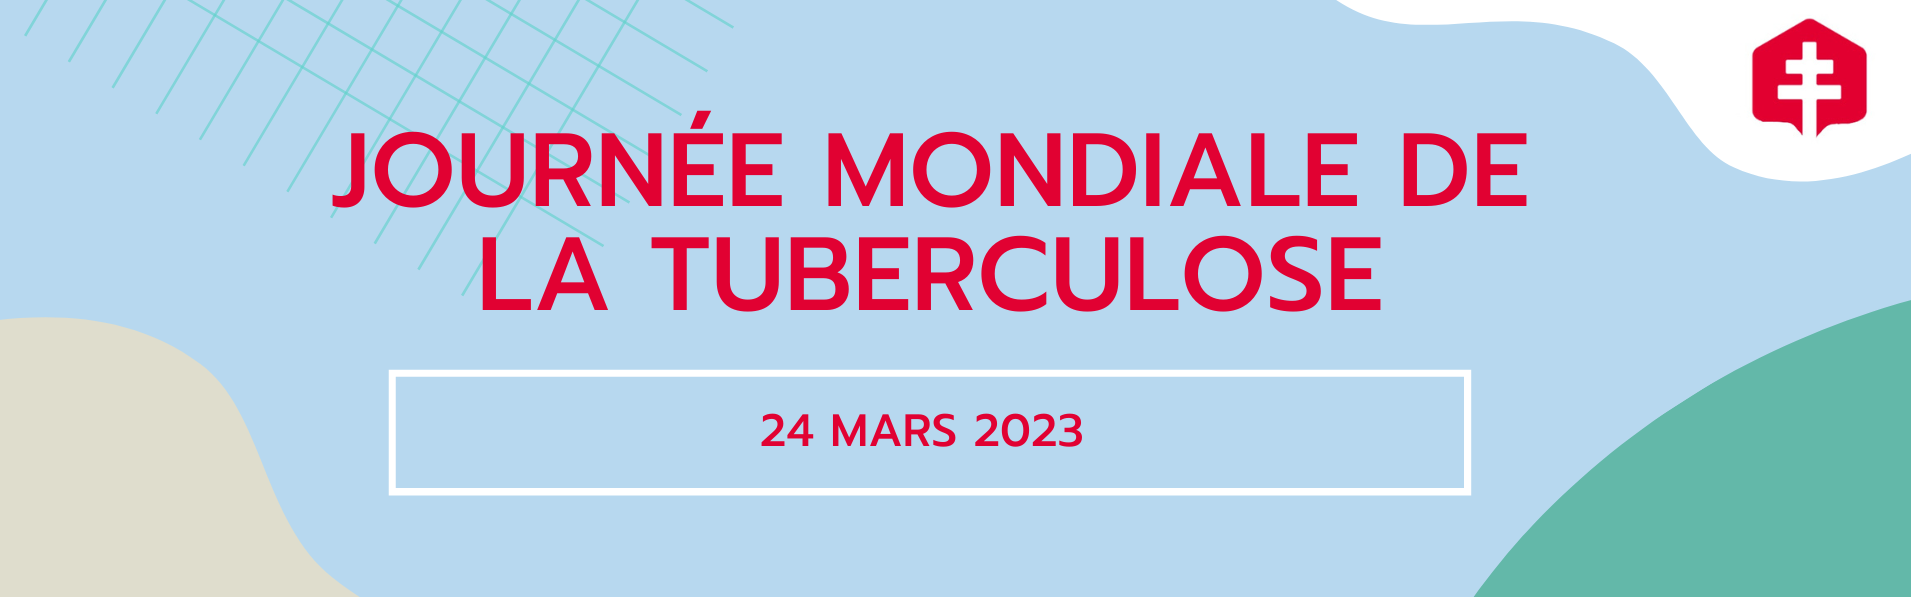 Journée mondiale de la tuberculose.png